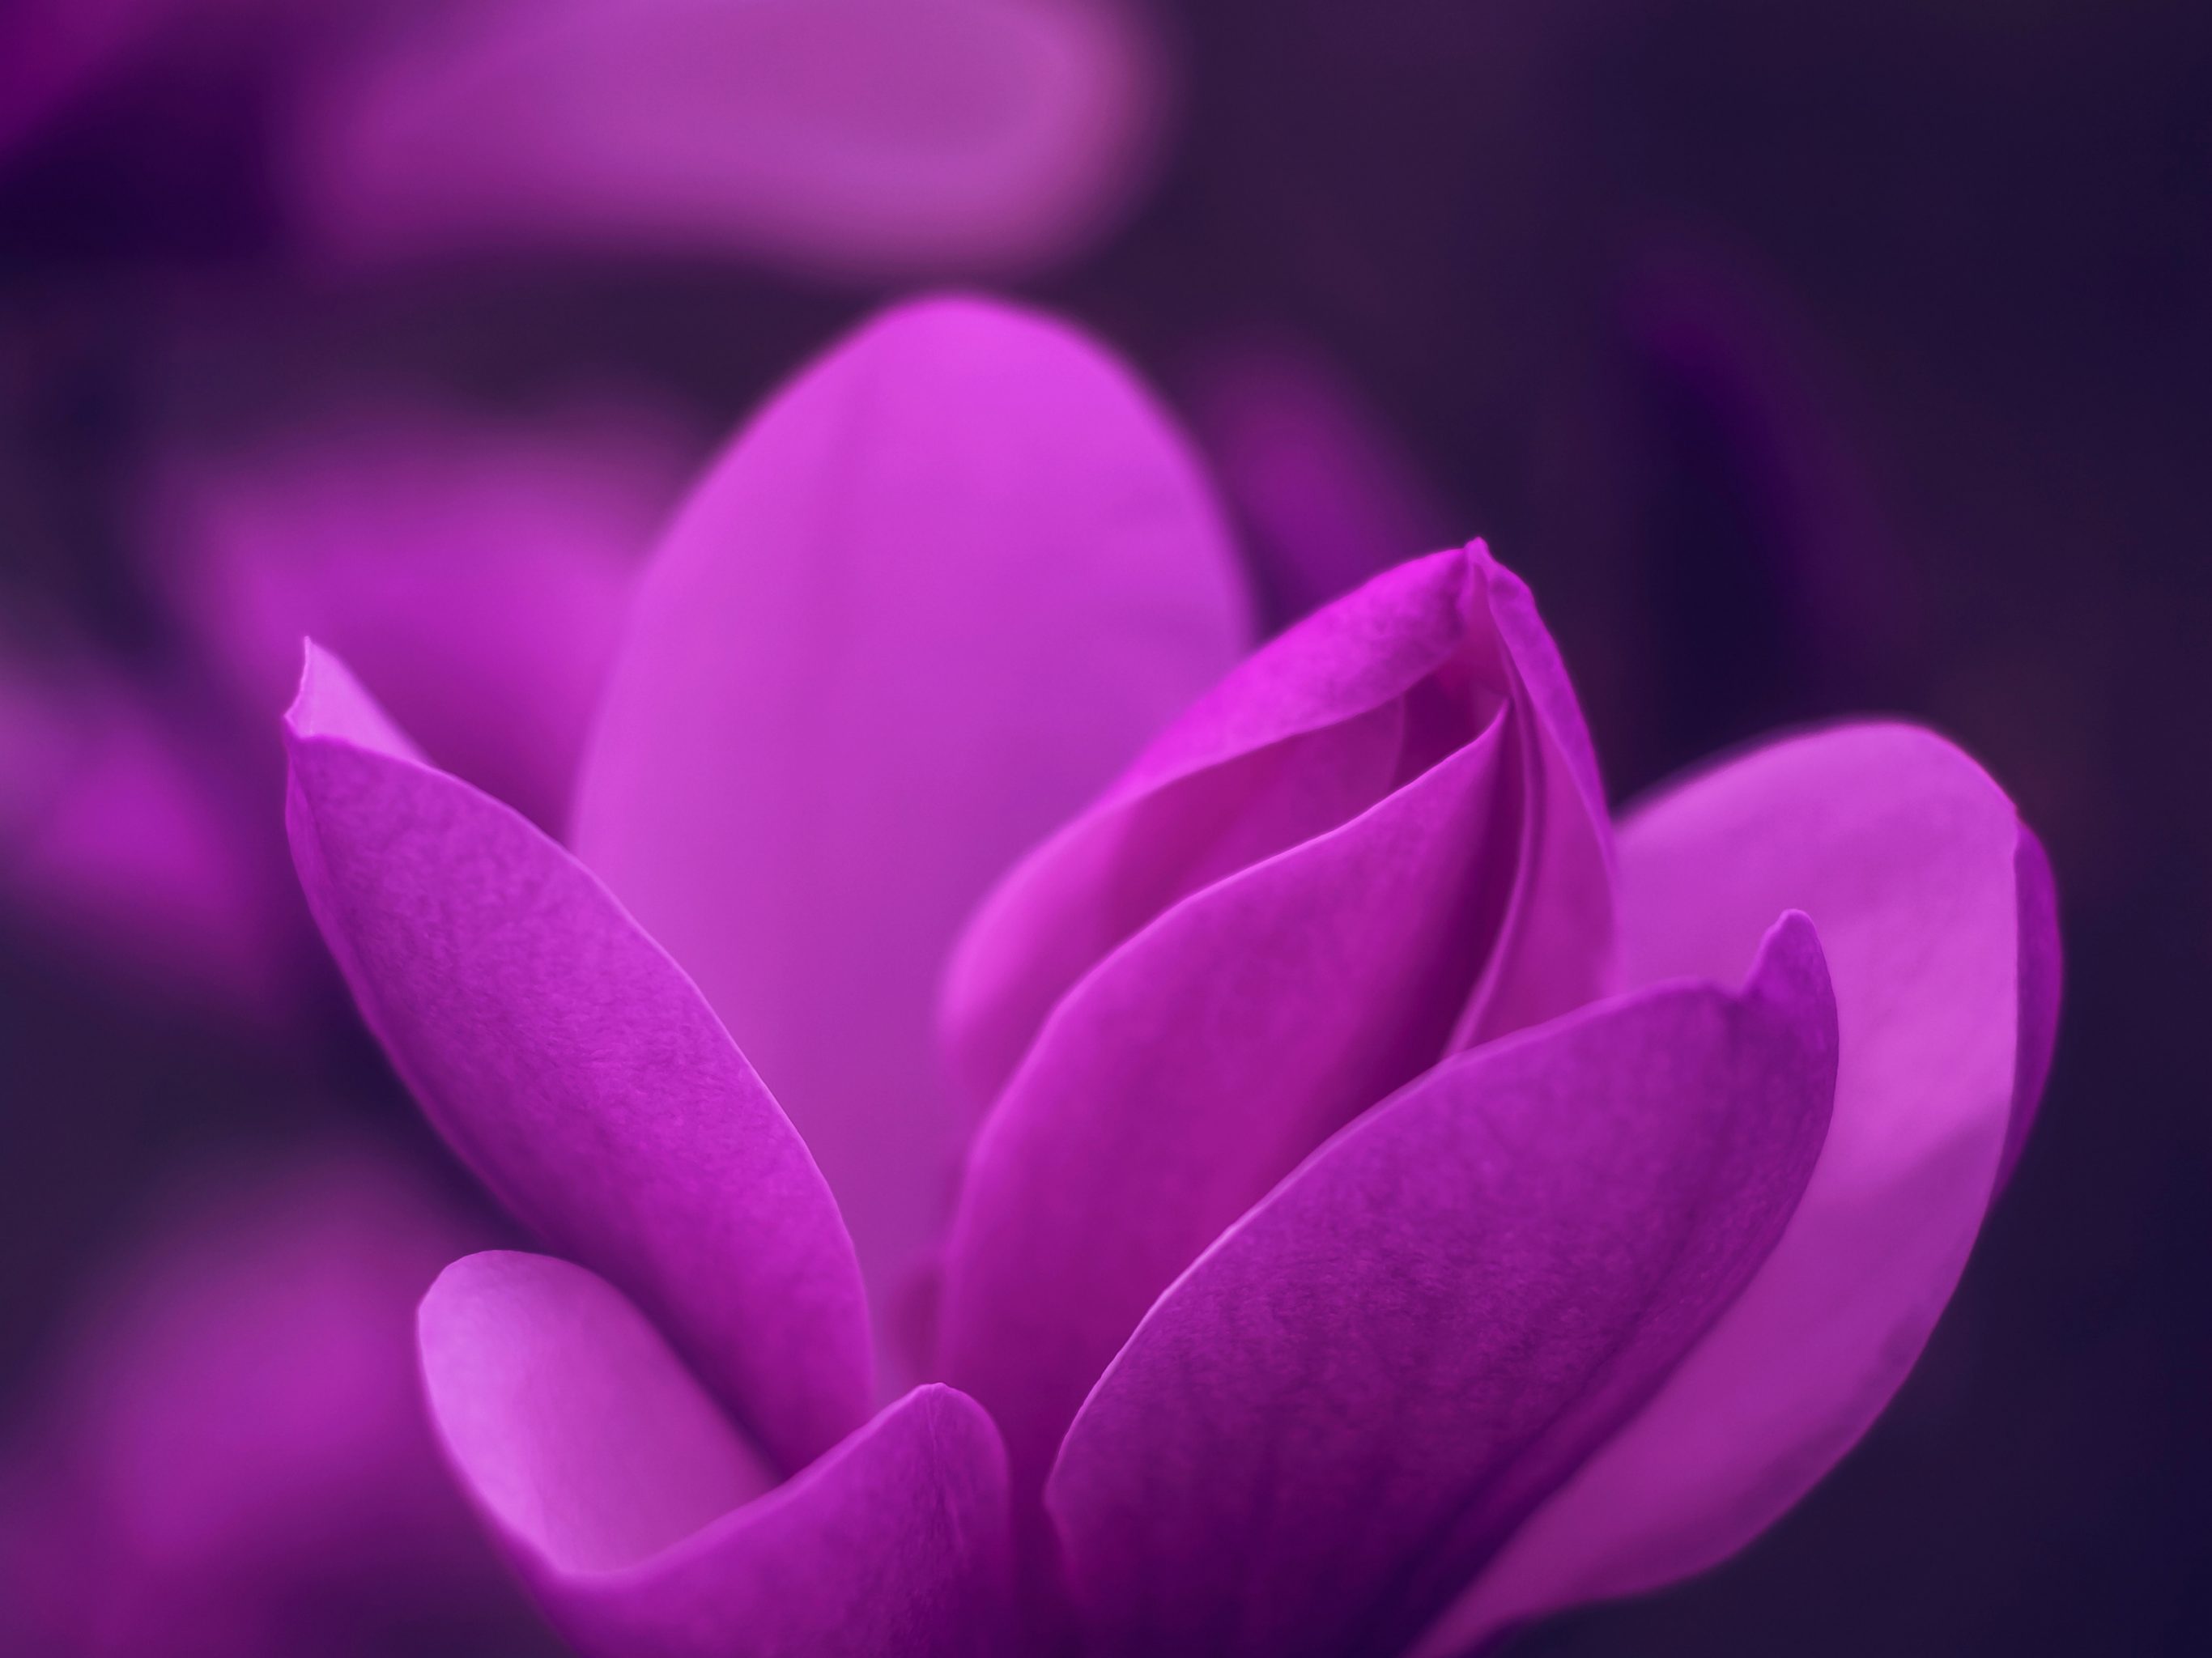 2732x2048 iPad air iPad Pro wallpapers Purple Bloom Blossom Petaled Flower iPad Wallpaper 2732x2048 pixels resolution